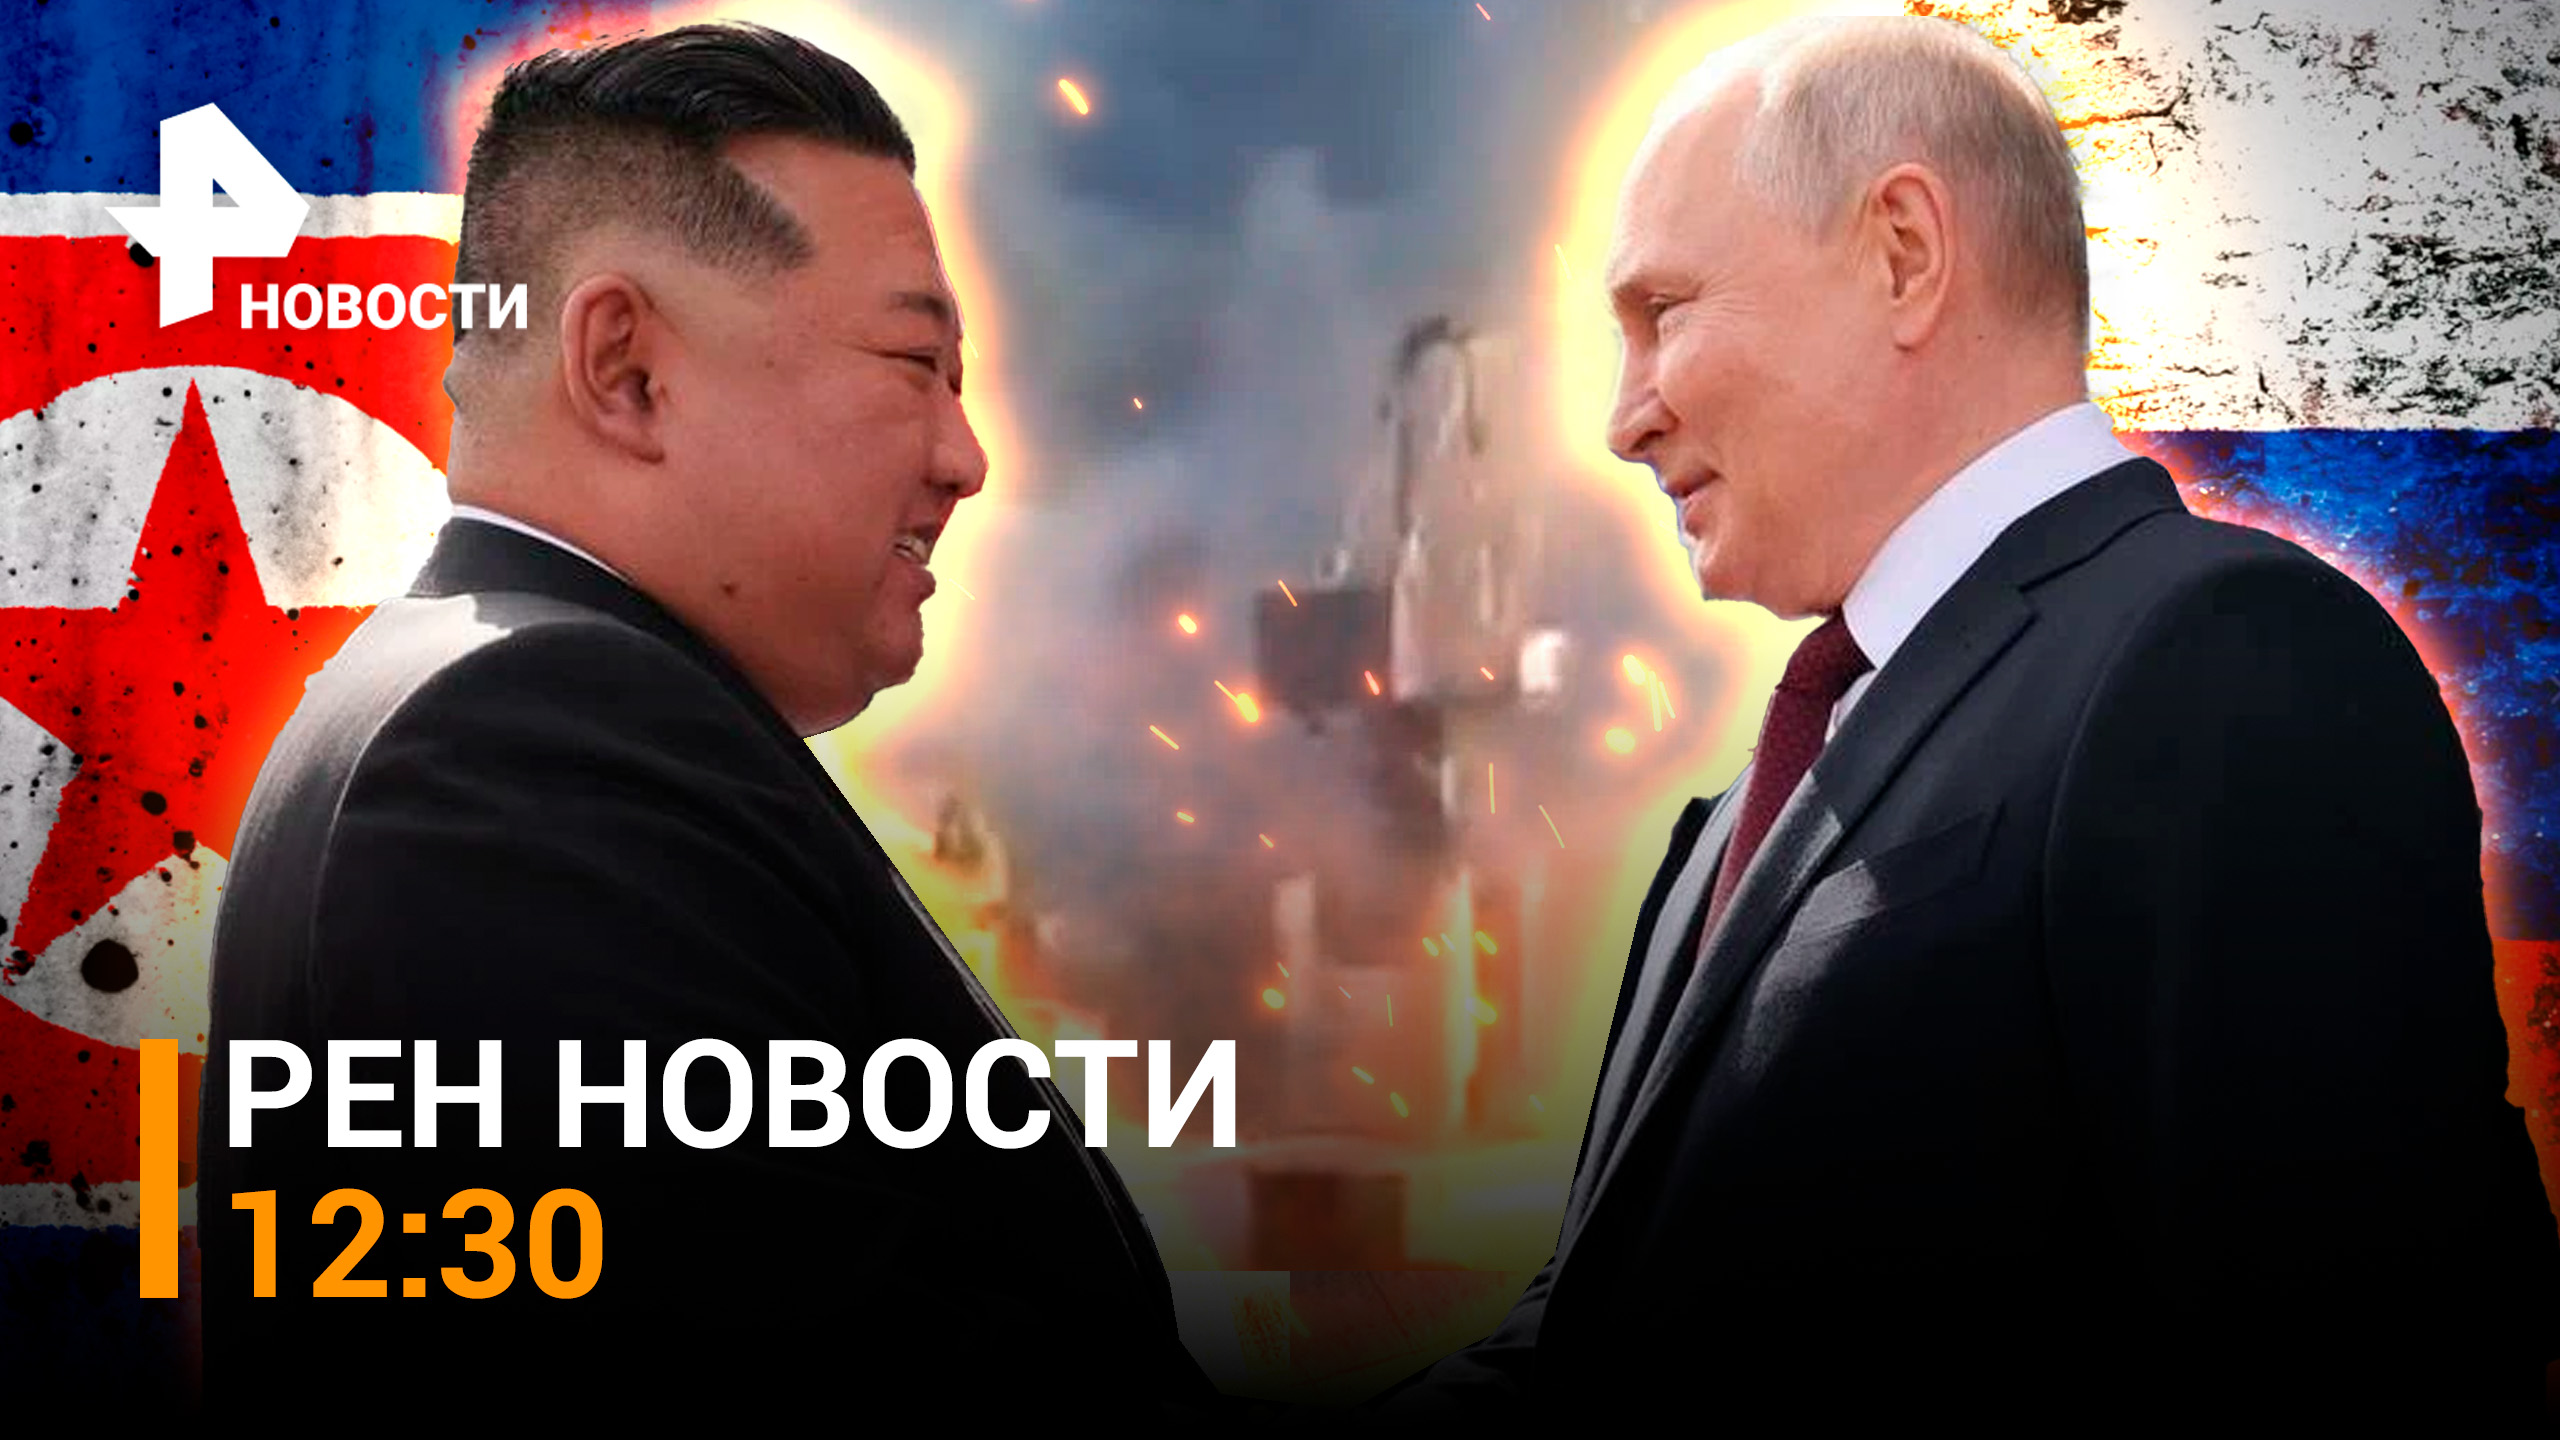 Встреча Путина и Ким Чен Ына. Удар по портам Одессы / РЕН Новости 13.09, 12:30